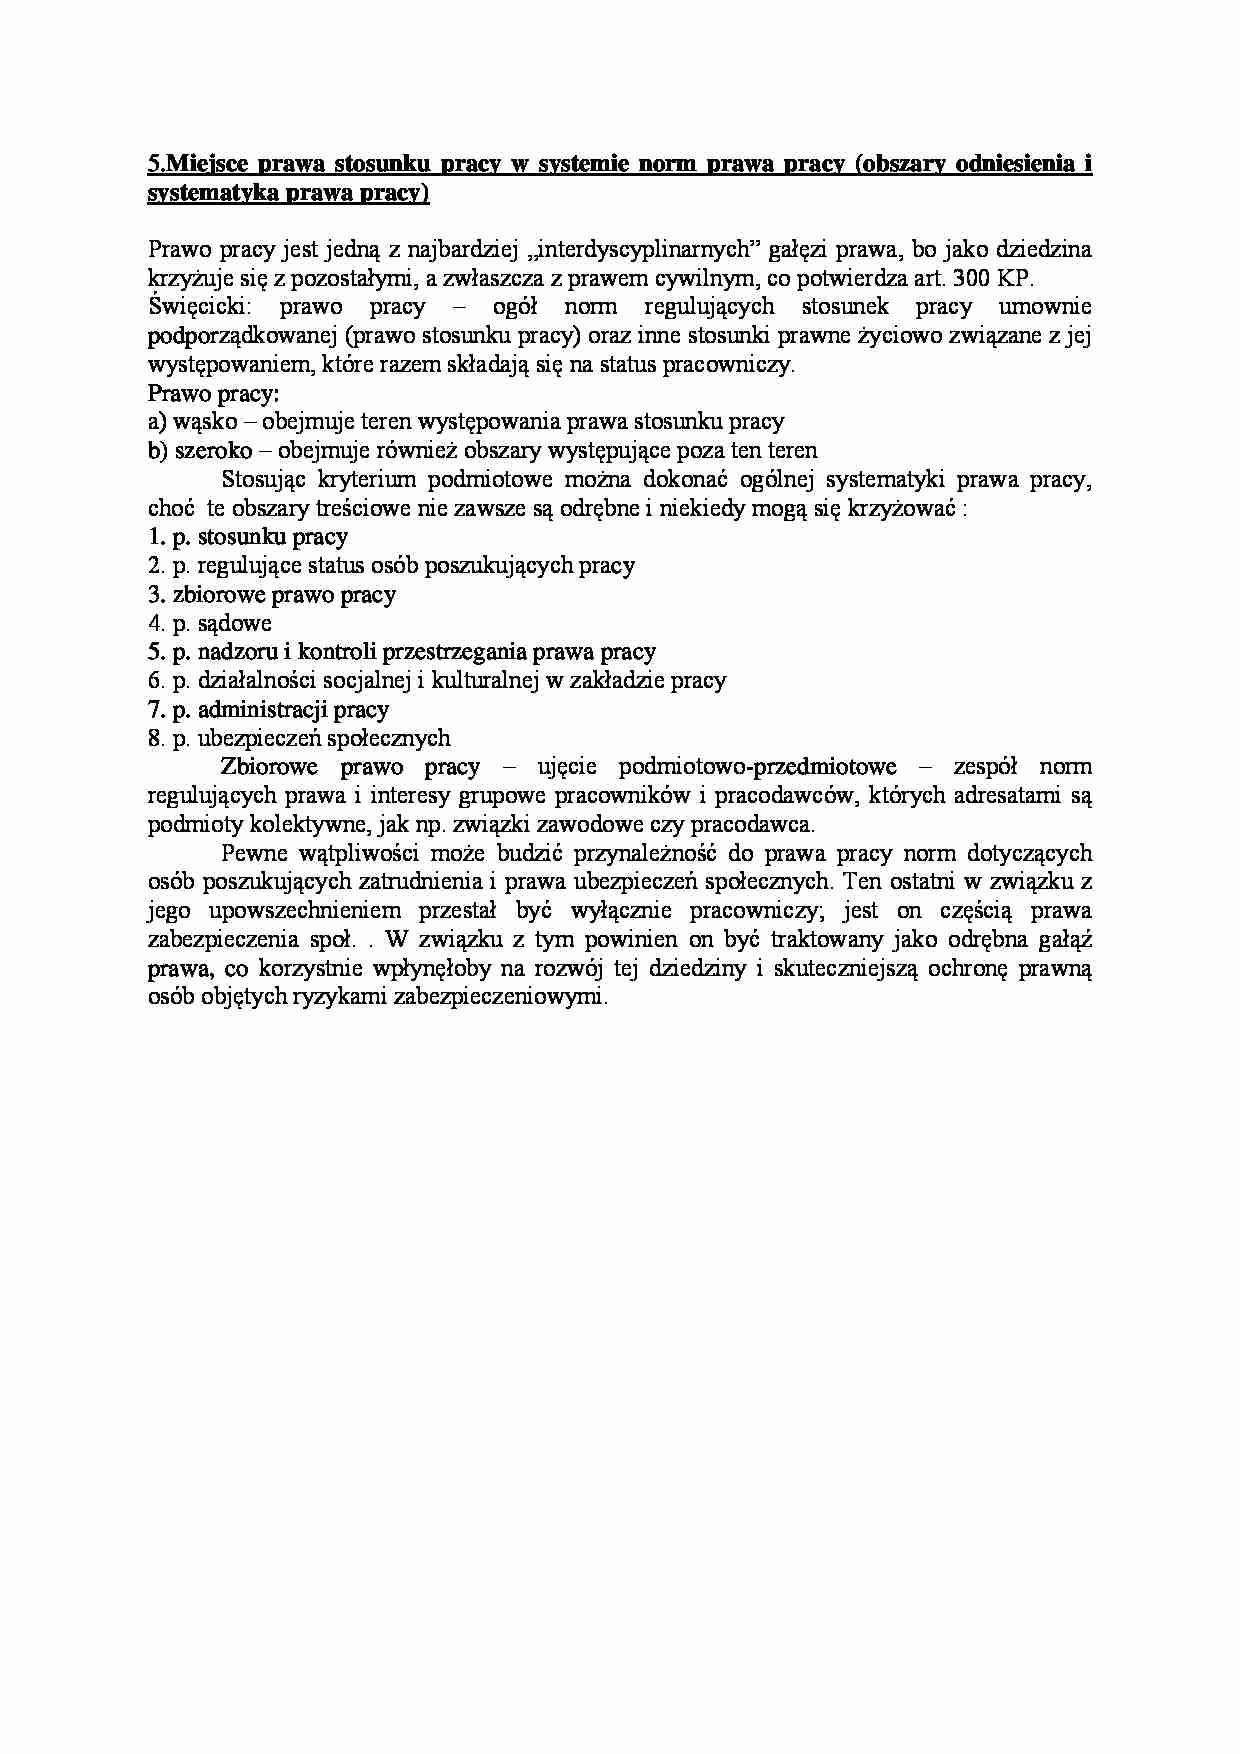 Miejsce prawa stosunku pracy w systemie norm prawa pracy (obszary odniesienia i systematyka prawa pracy) - strona 1